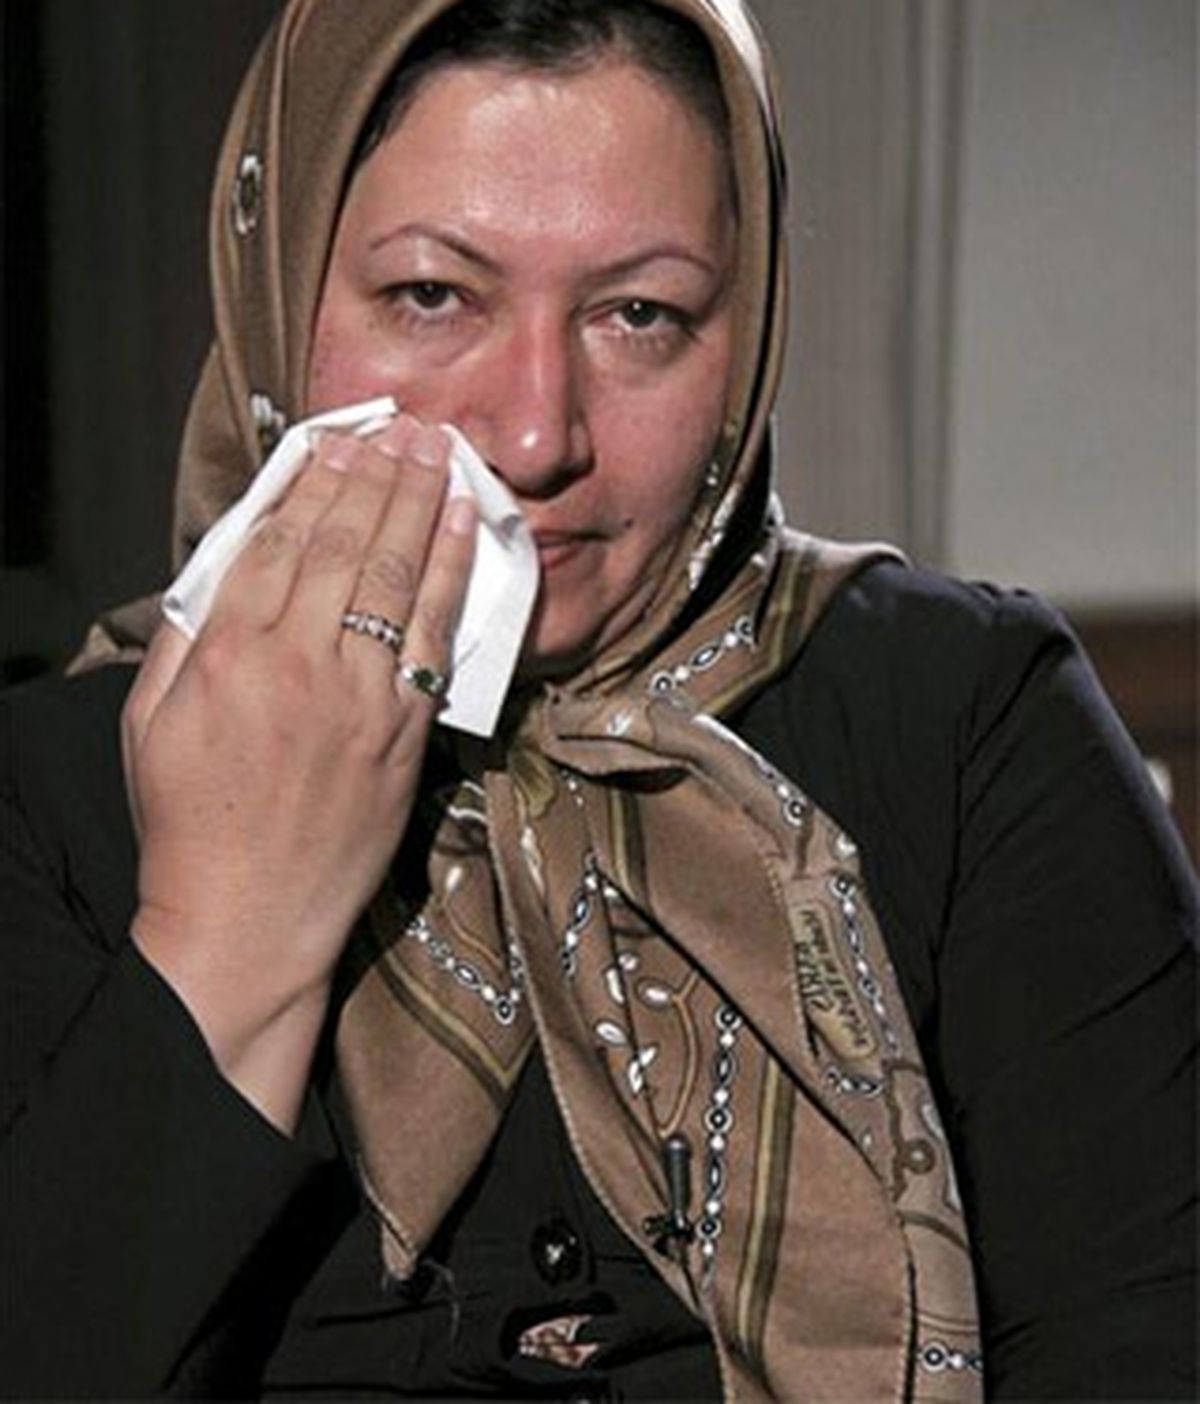 Imagen cedida por la cadena iraní Press TV el 9 de diciembre de 2010 de Sakineh Mohammadi Ashtiani, ciudadana iraní condenada a morir lapidada por cometer adulterio. EFE/Archivo